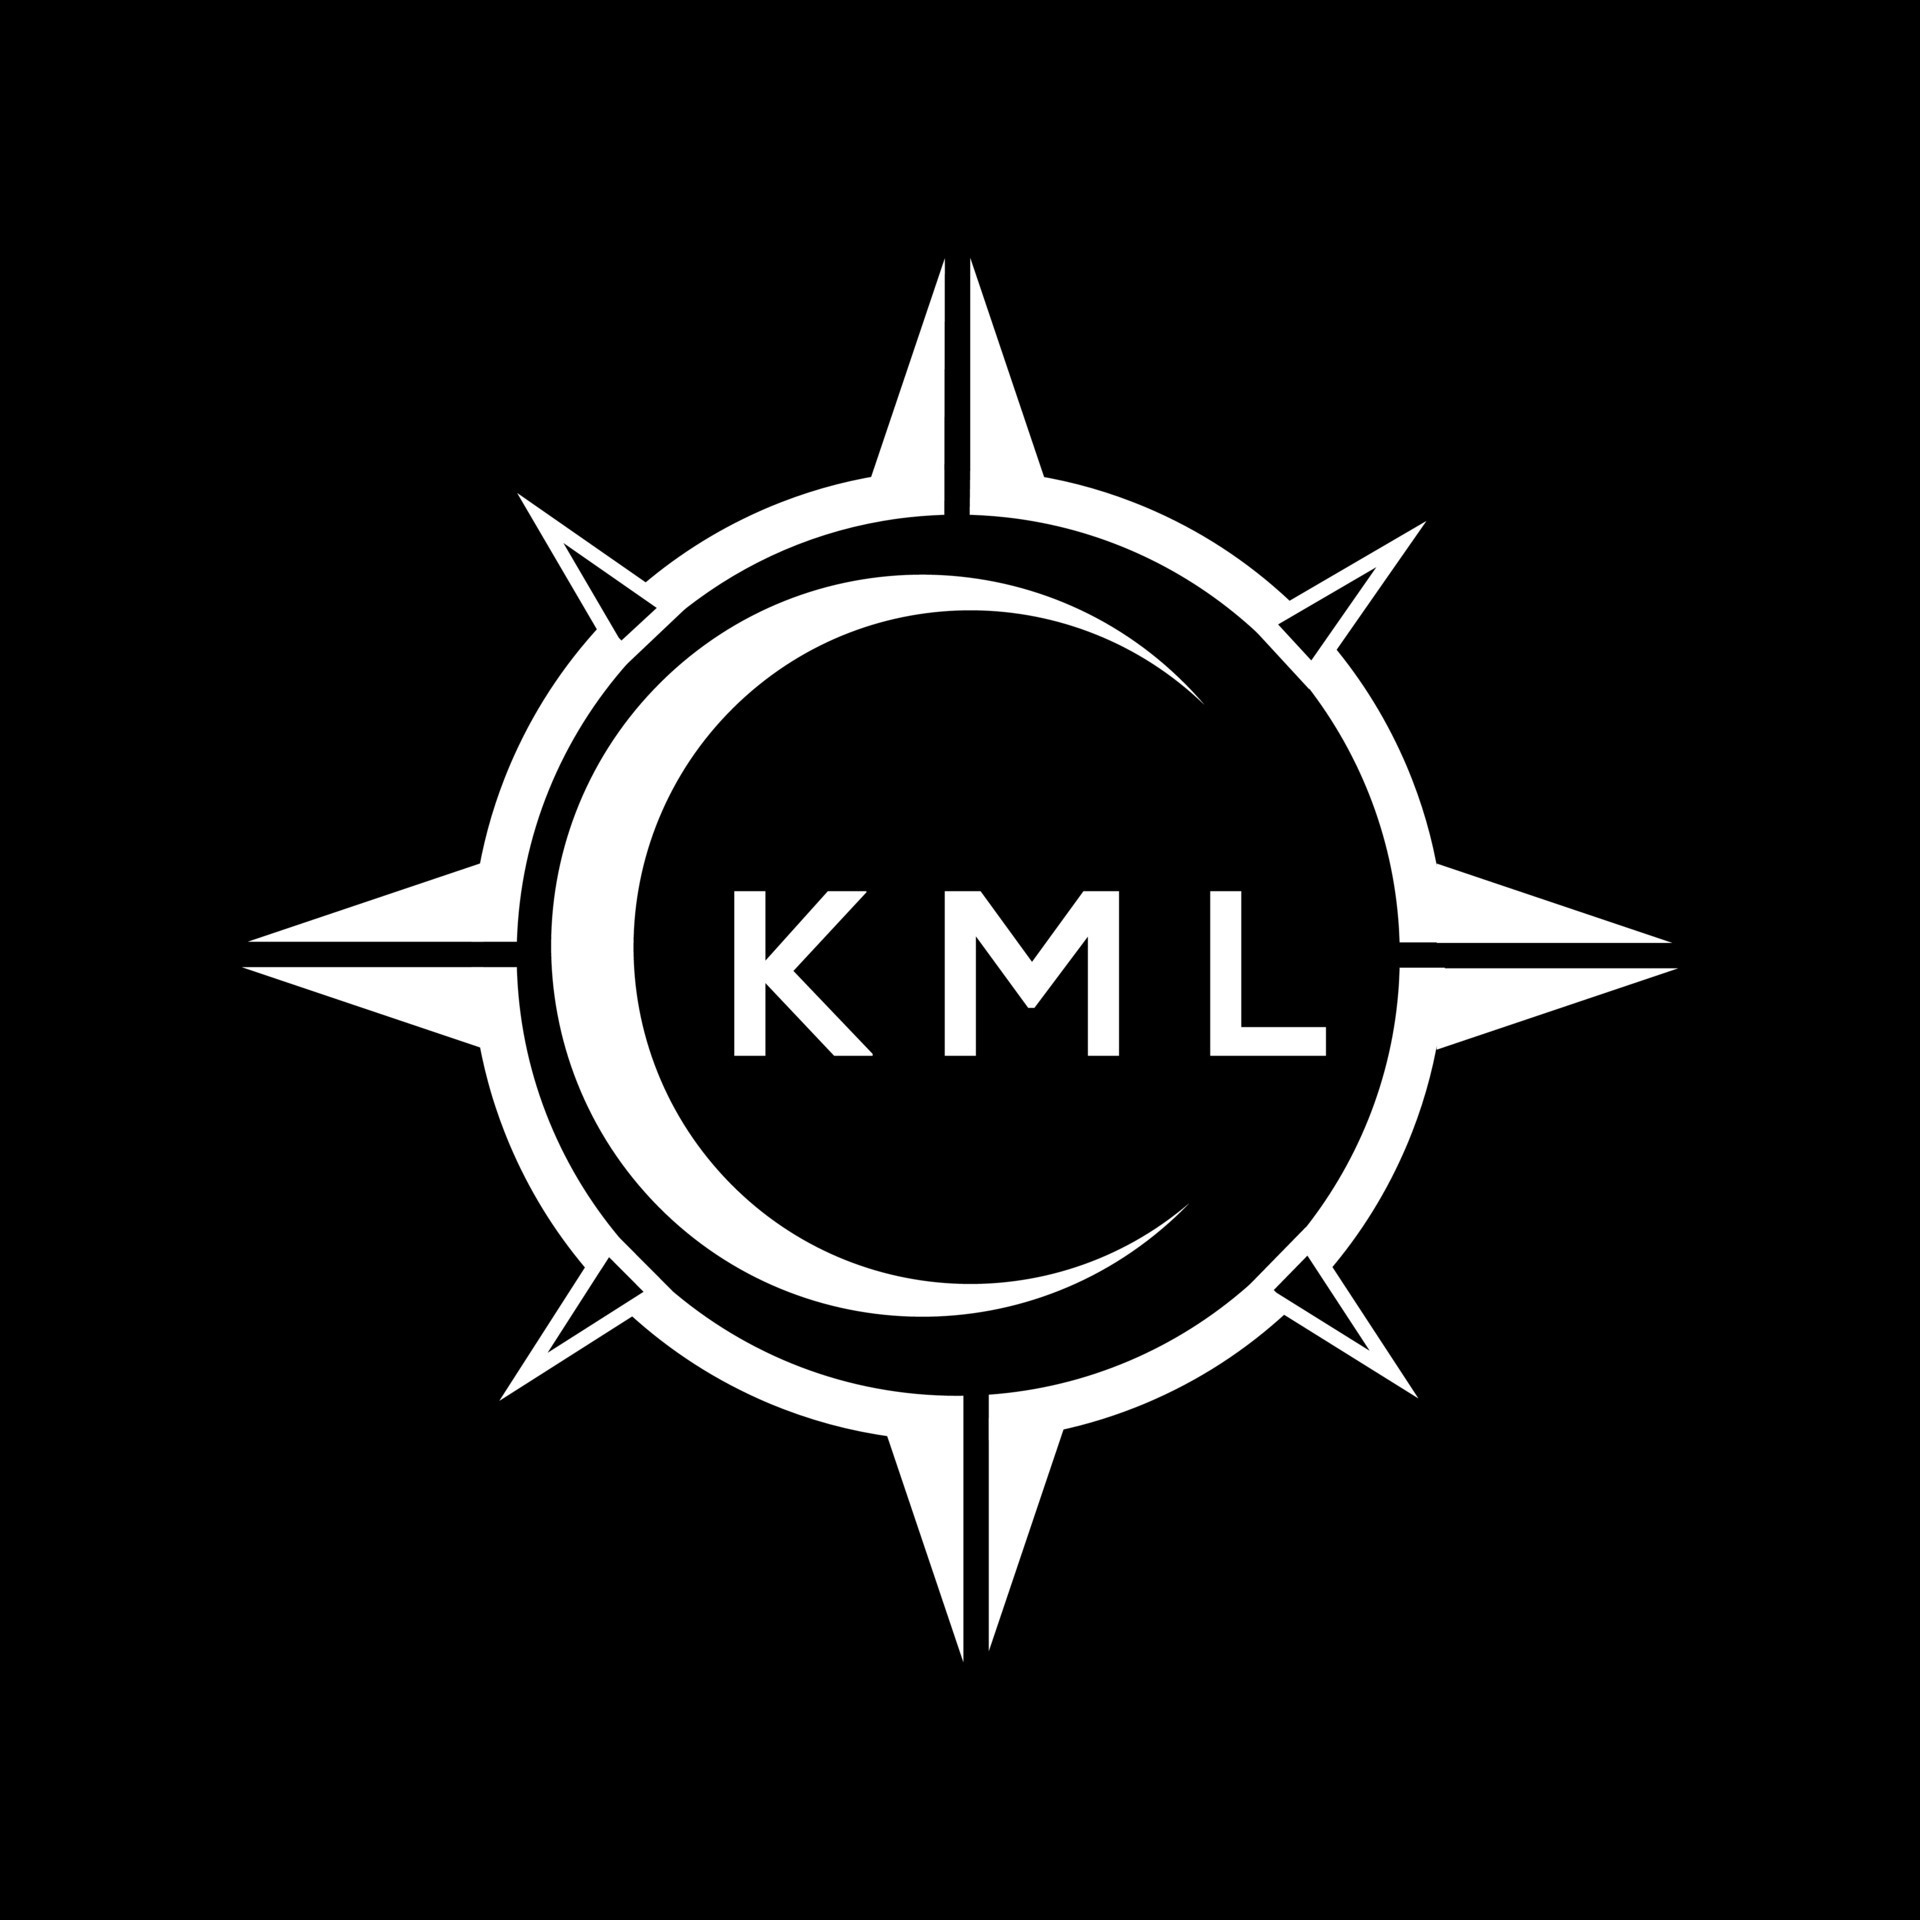 KML Letter Logo Design on White Background. KML Creative Circle Letter ...